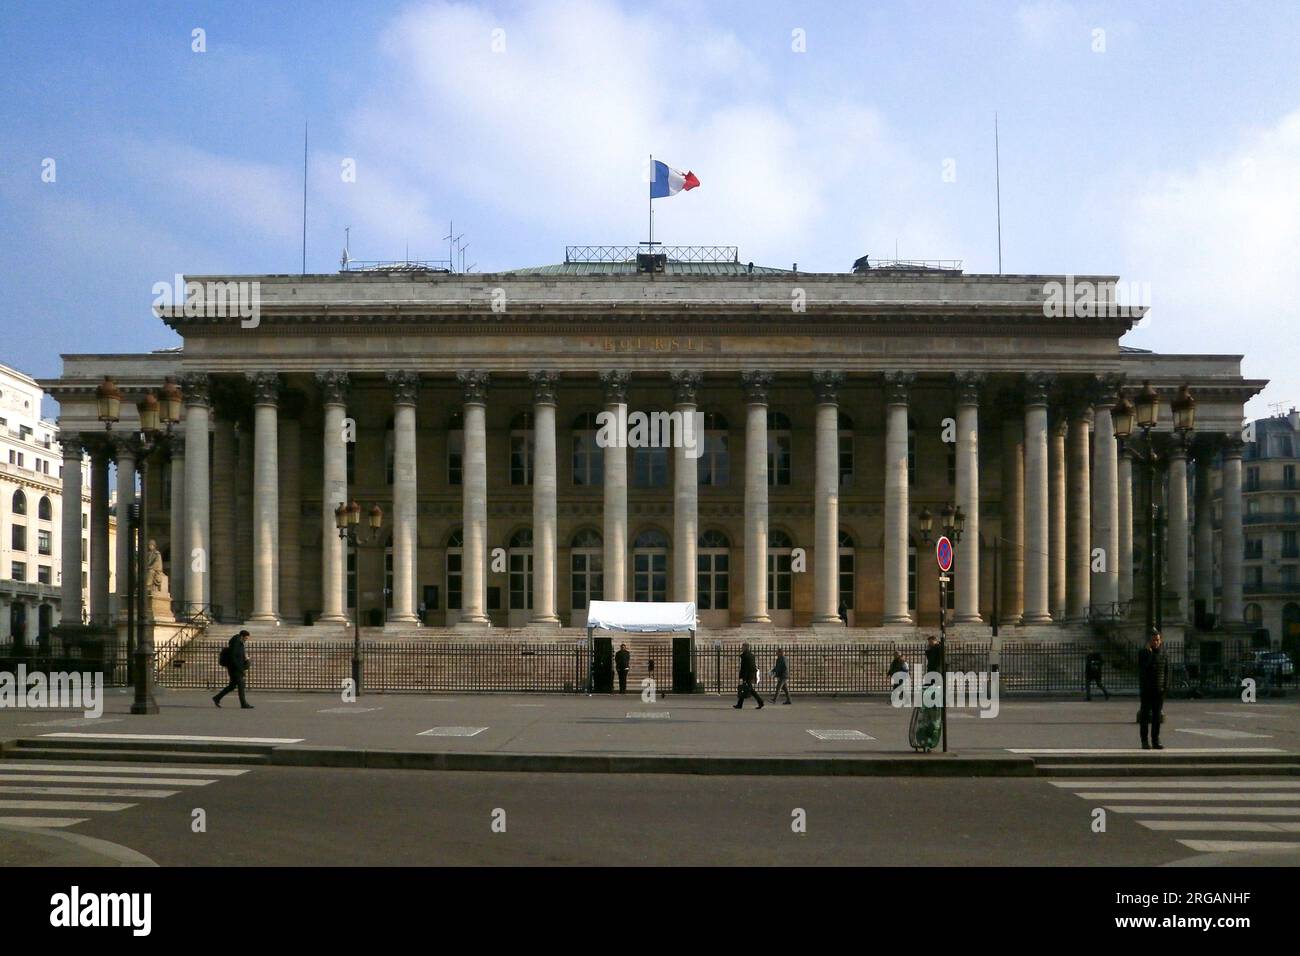 Paris, France - February 21 2018: The Bourse de Paris (English: Paris Bourse) is the historical Paris stock exchange, known as Euronext Paris from 200 Stock Photo